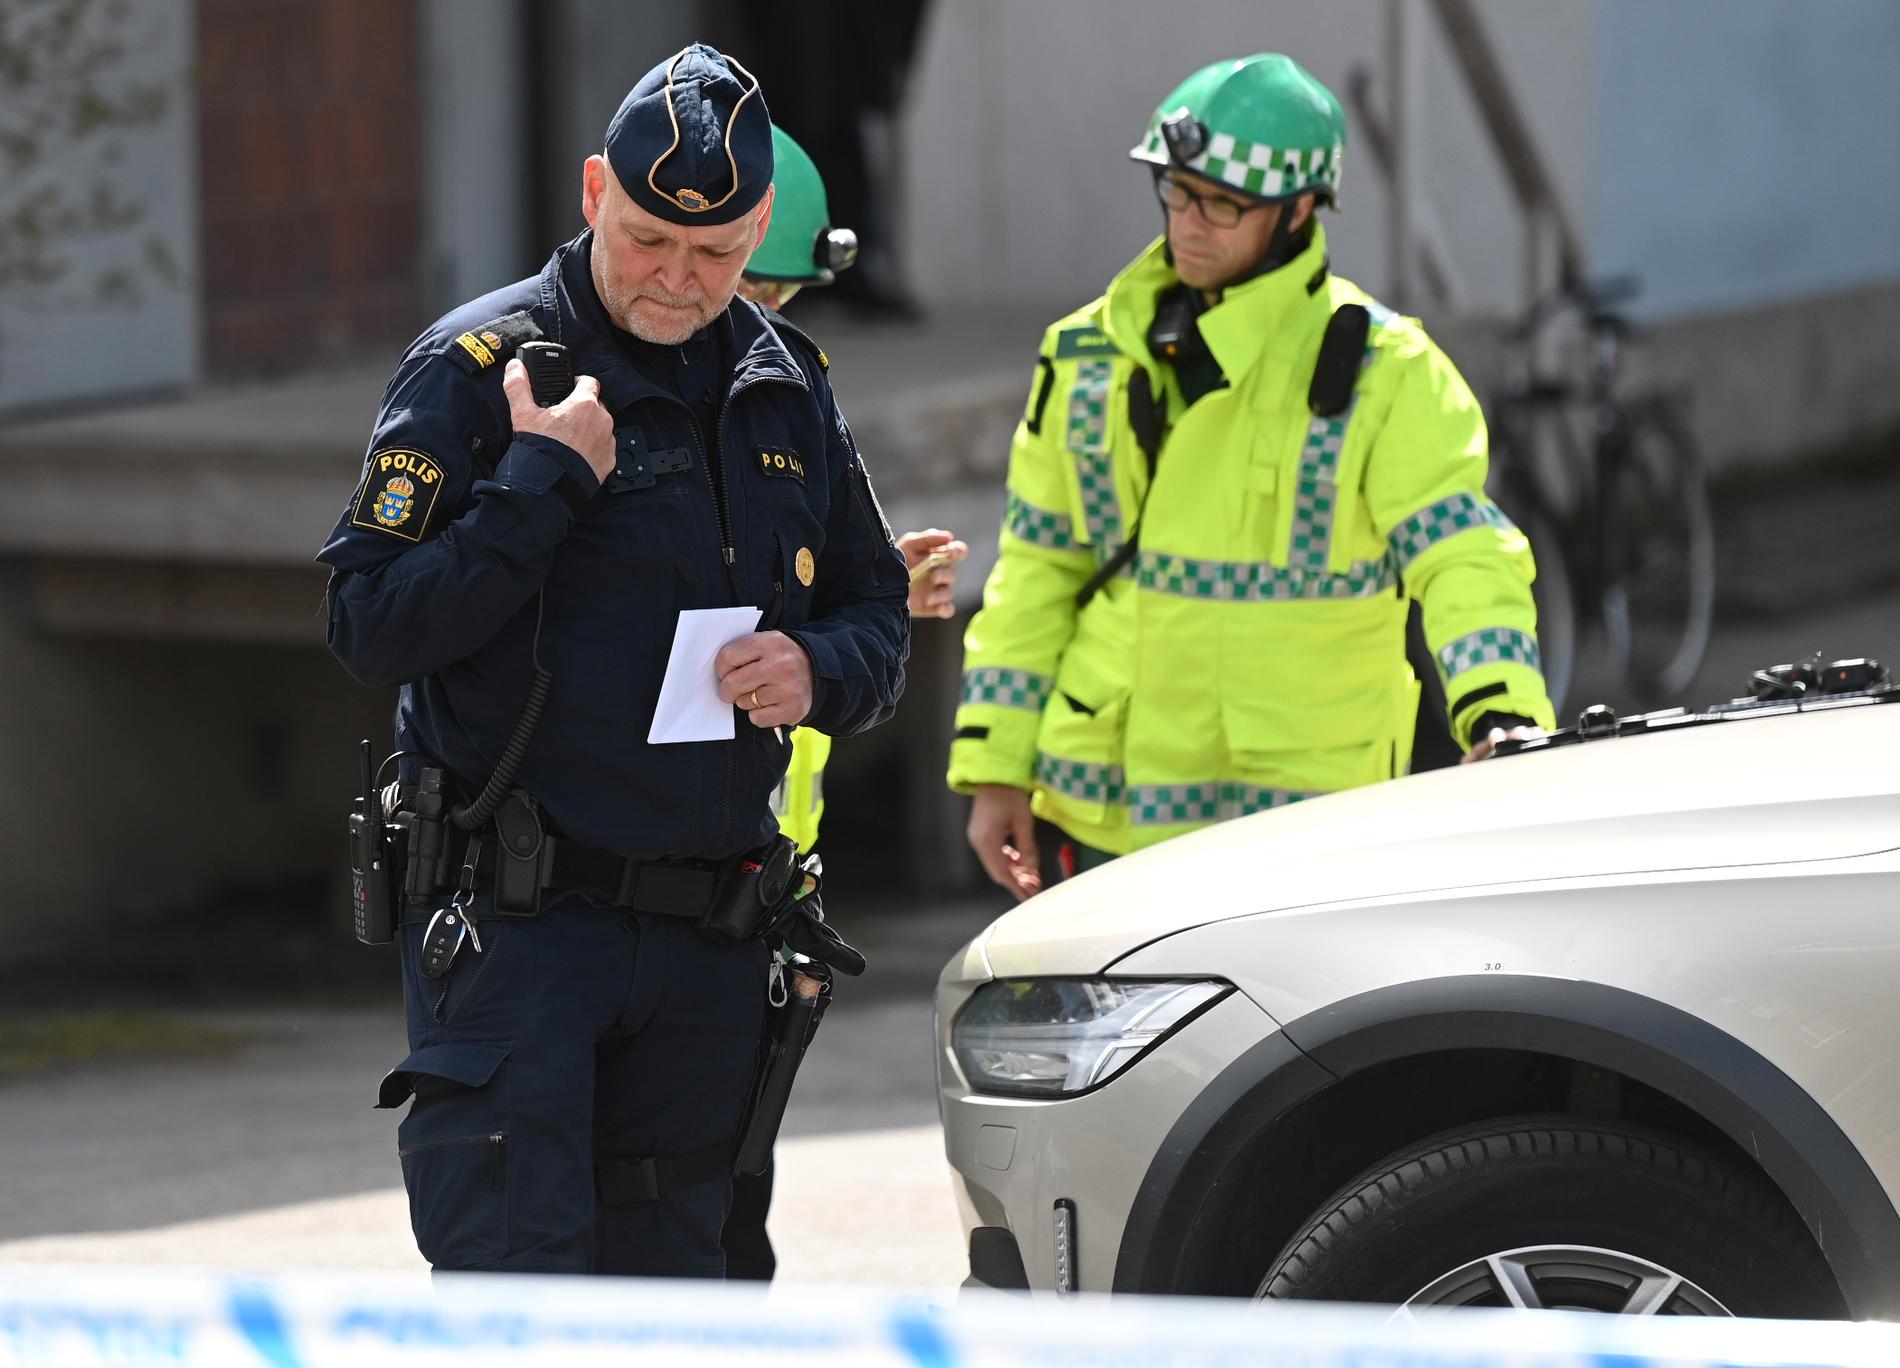 Det pågår just nu en polisinsats på en skola i västra Stockholm.